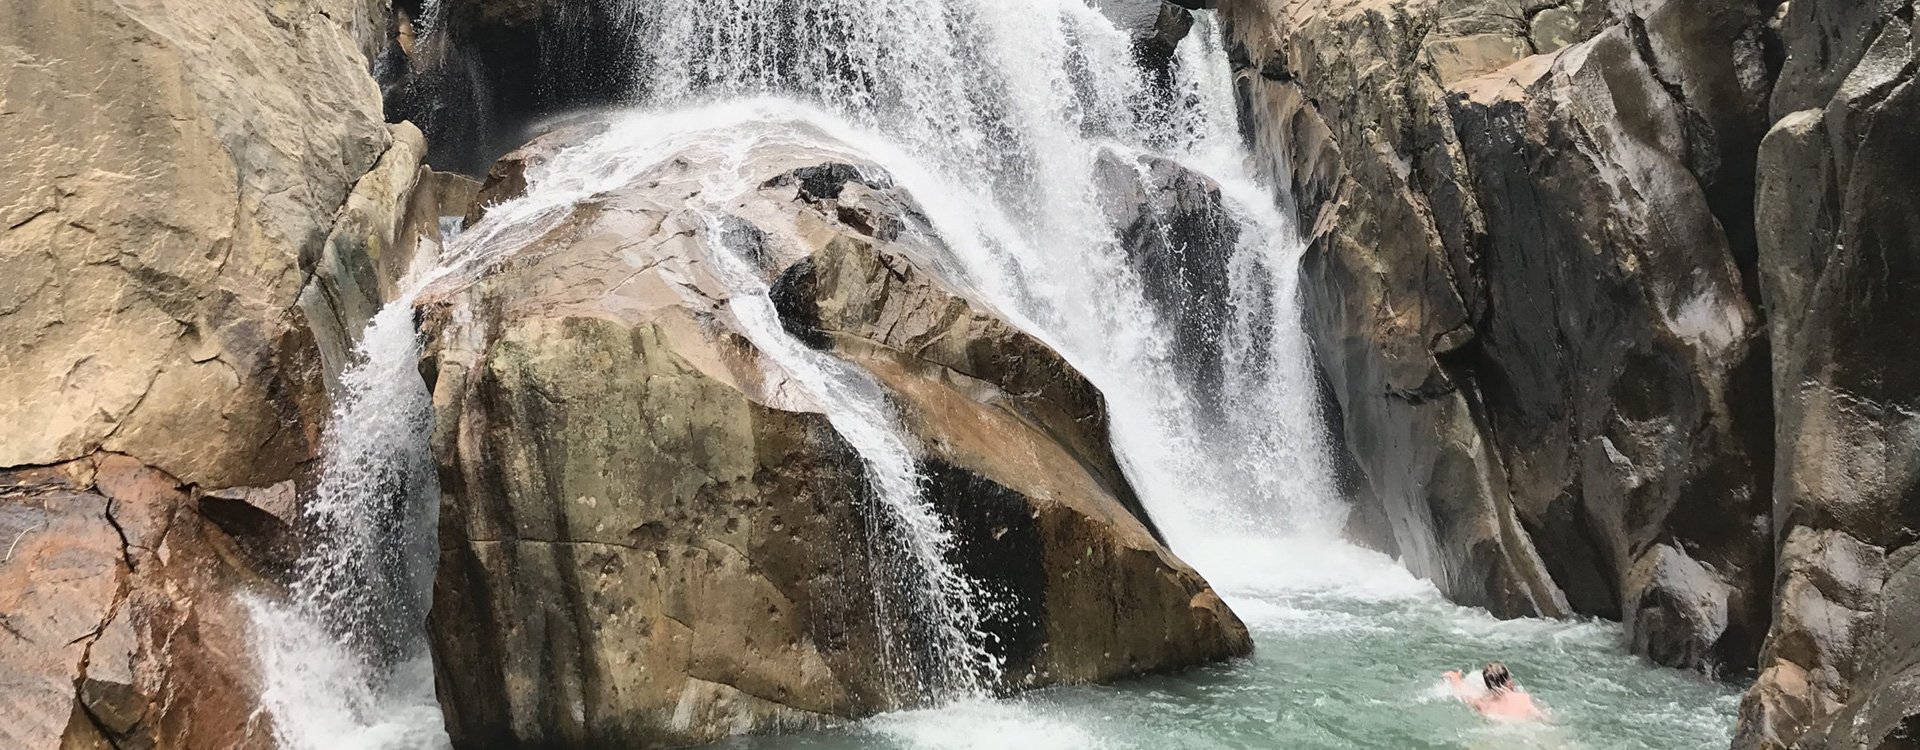 Nha Trang_The Ba Ho Waterfalls